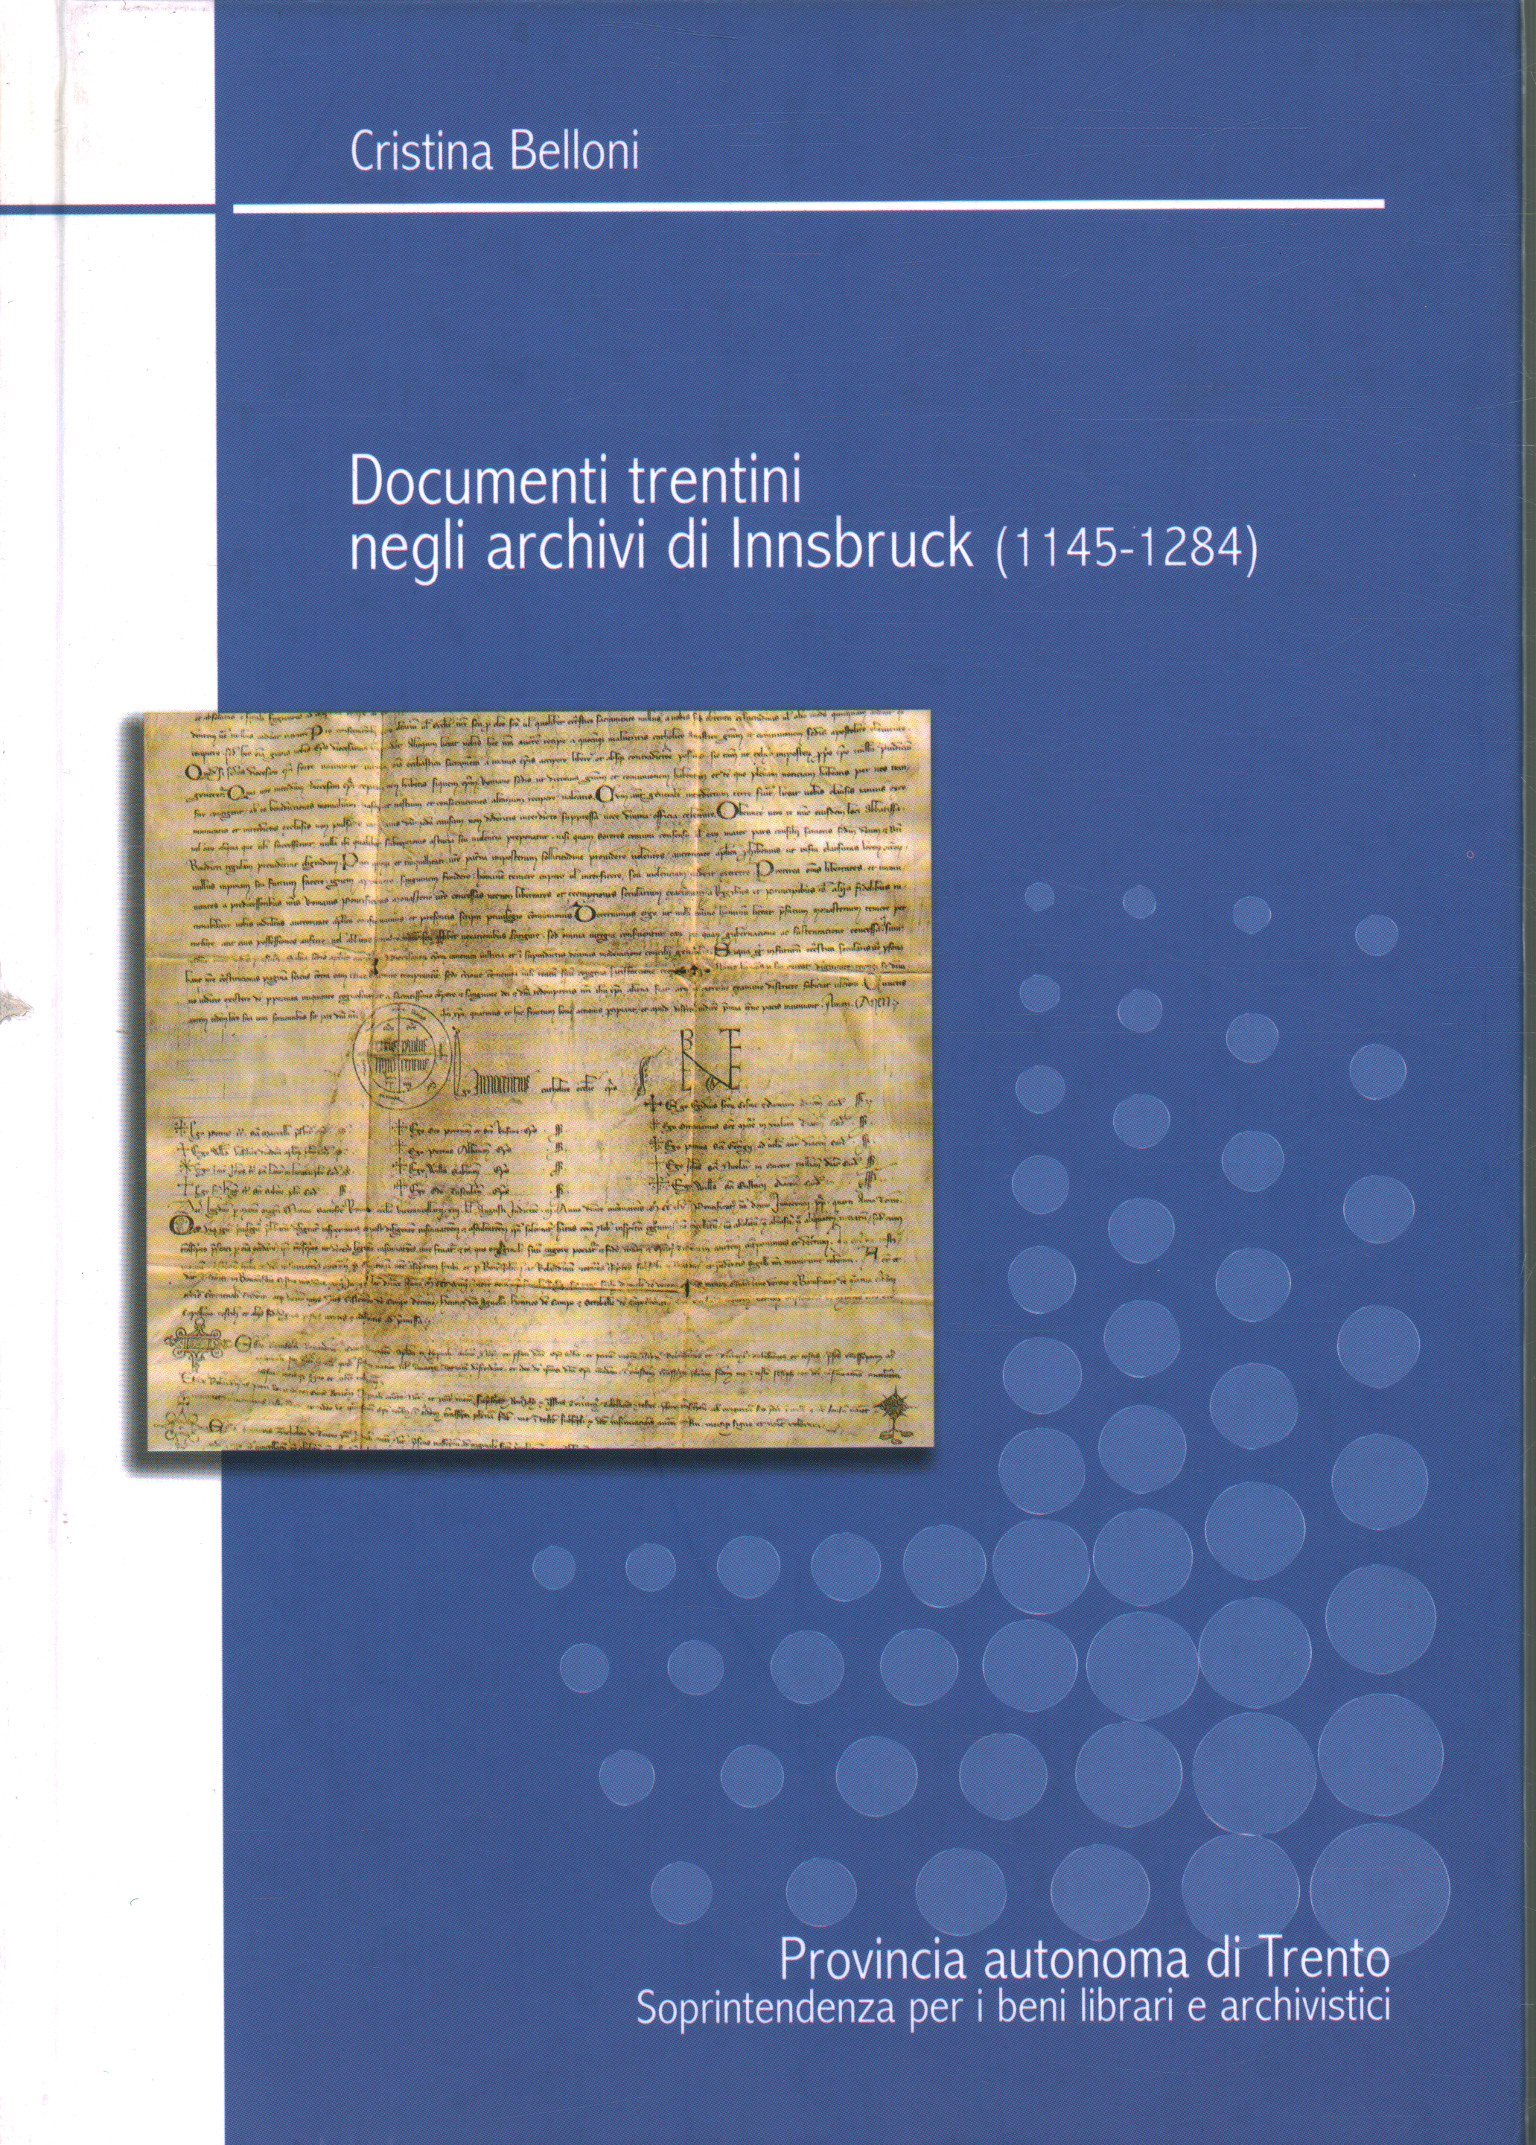 Documenti trentini negli archivi di Innsbruck (114, Cristina Belloni